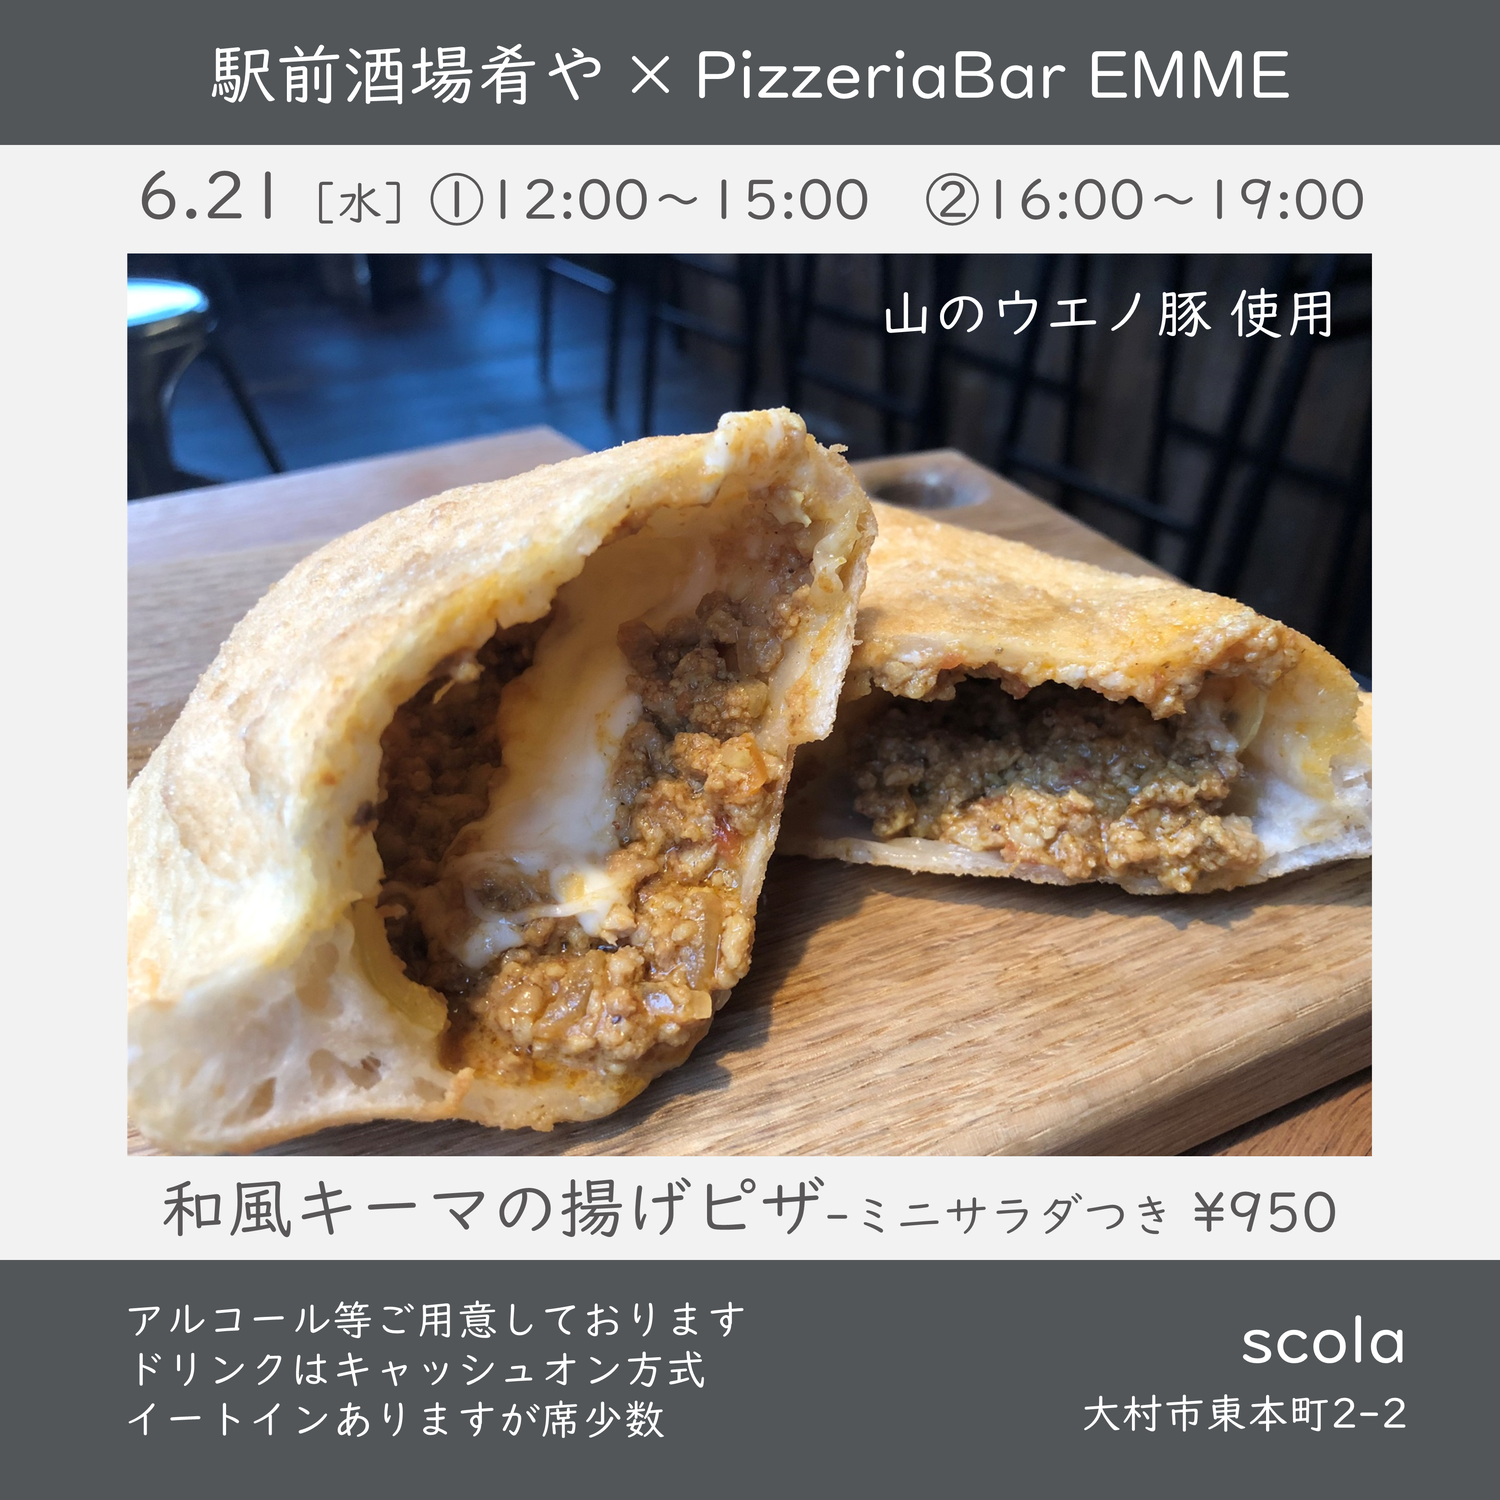 駅前酒場肴や × PizzeriaBar EMME in scola vol.4